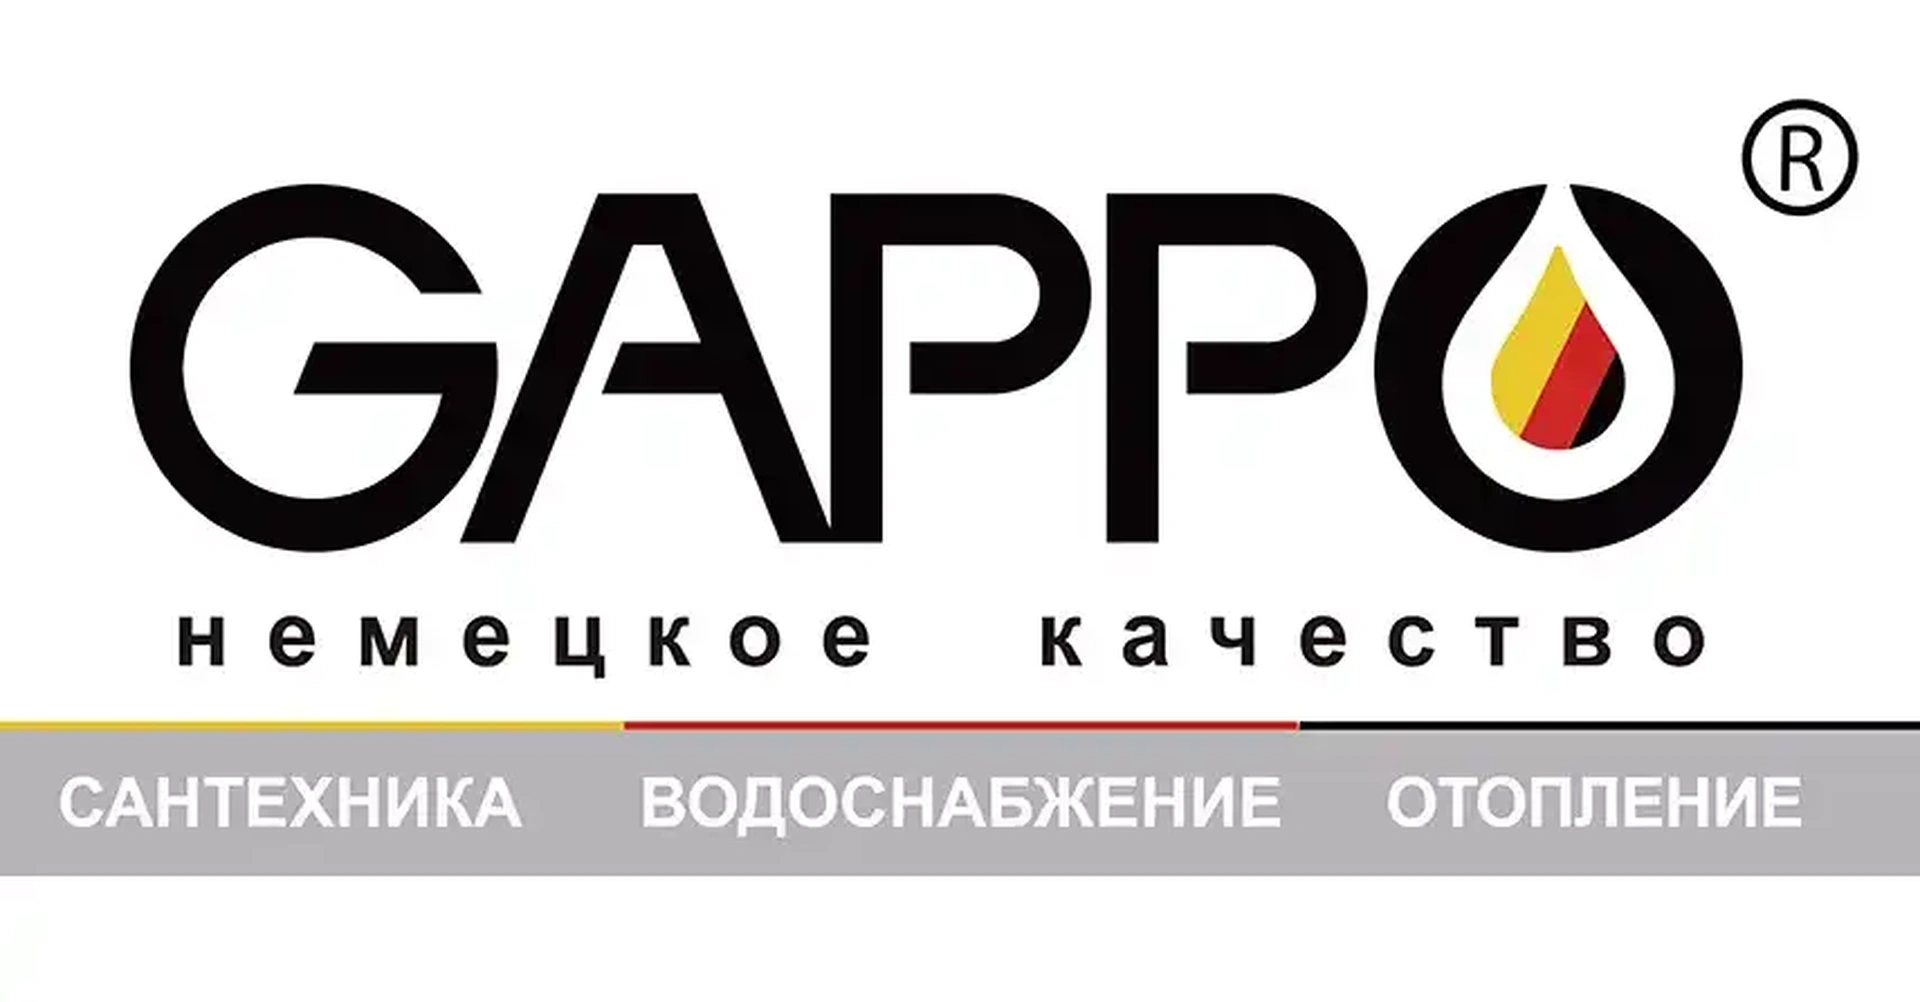 Сантехнику gappo. Смесители Gappo логотип. Гаппо лого. Сантехника Гаппо. Лого сантехника Gappo.